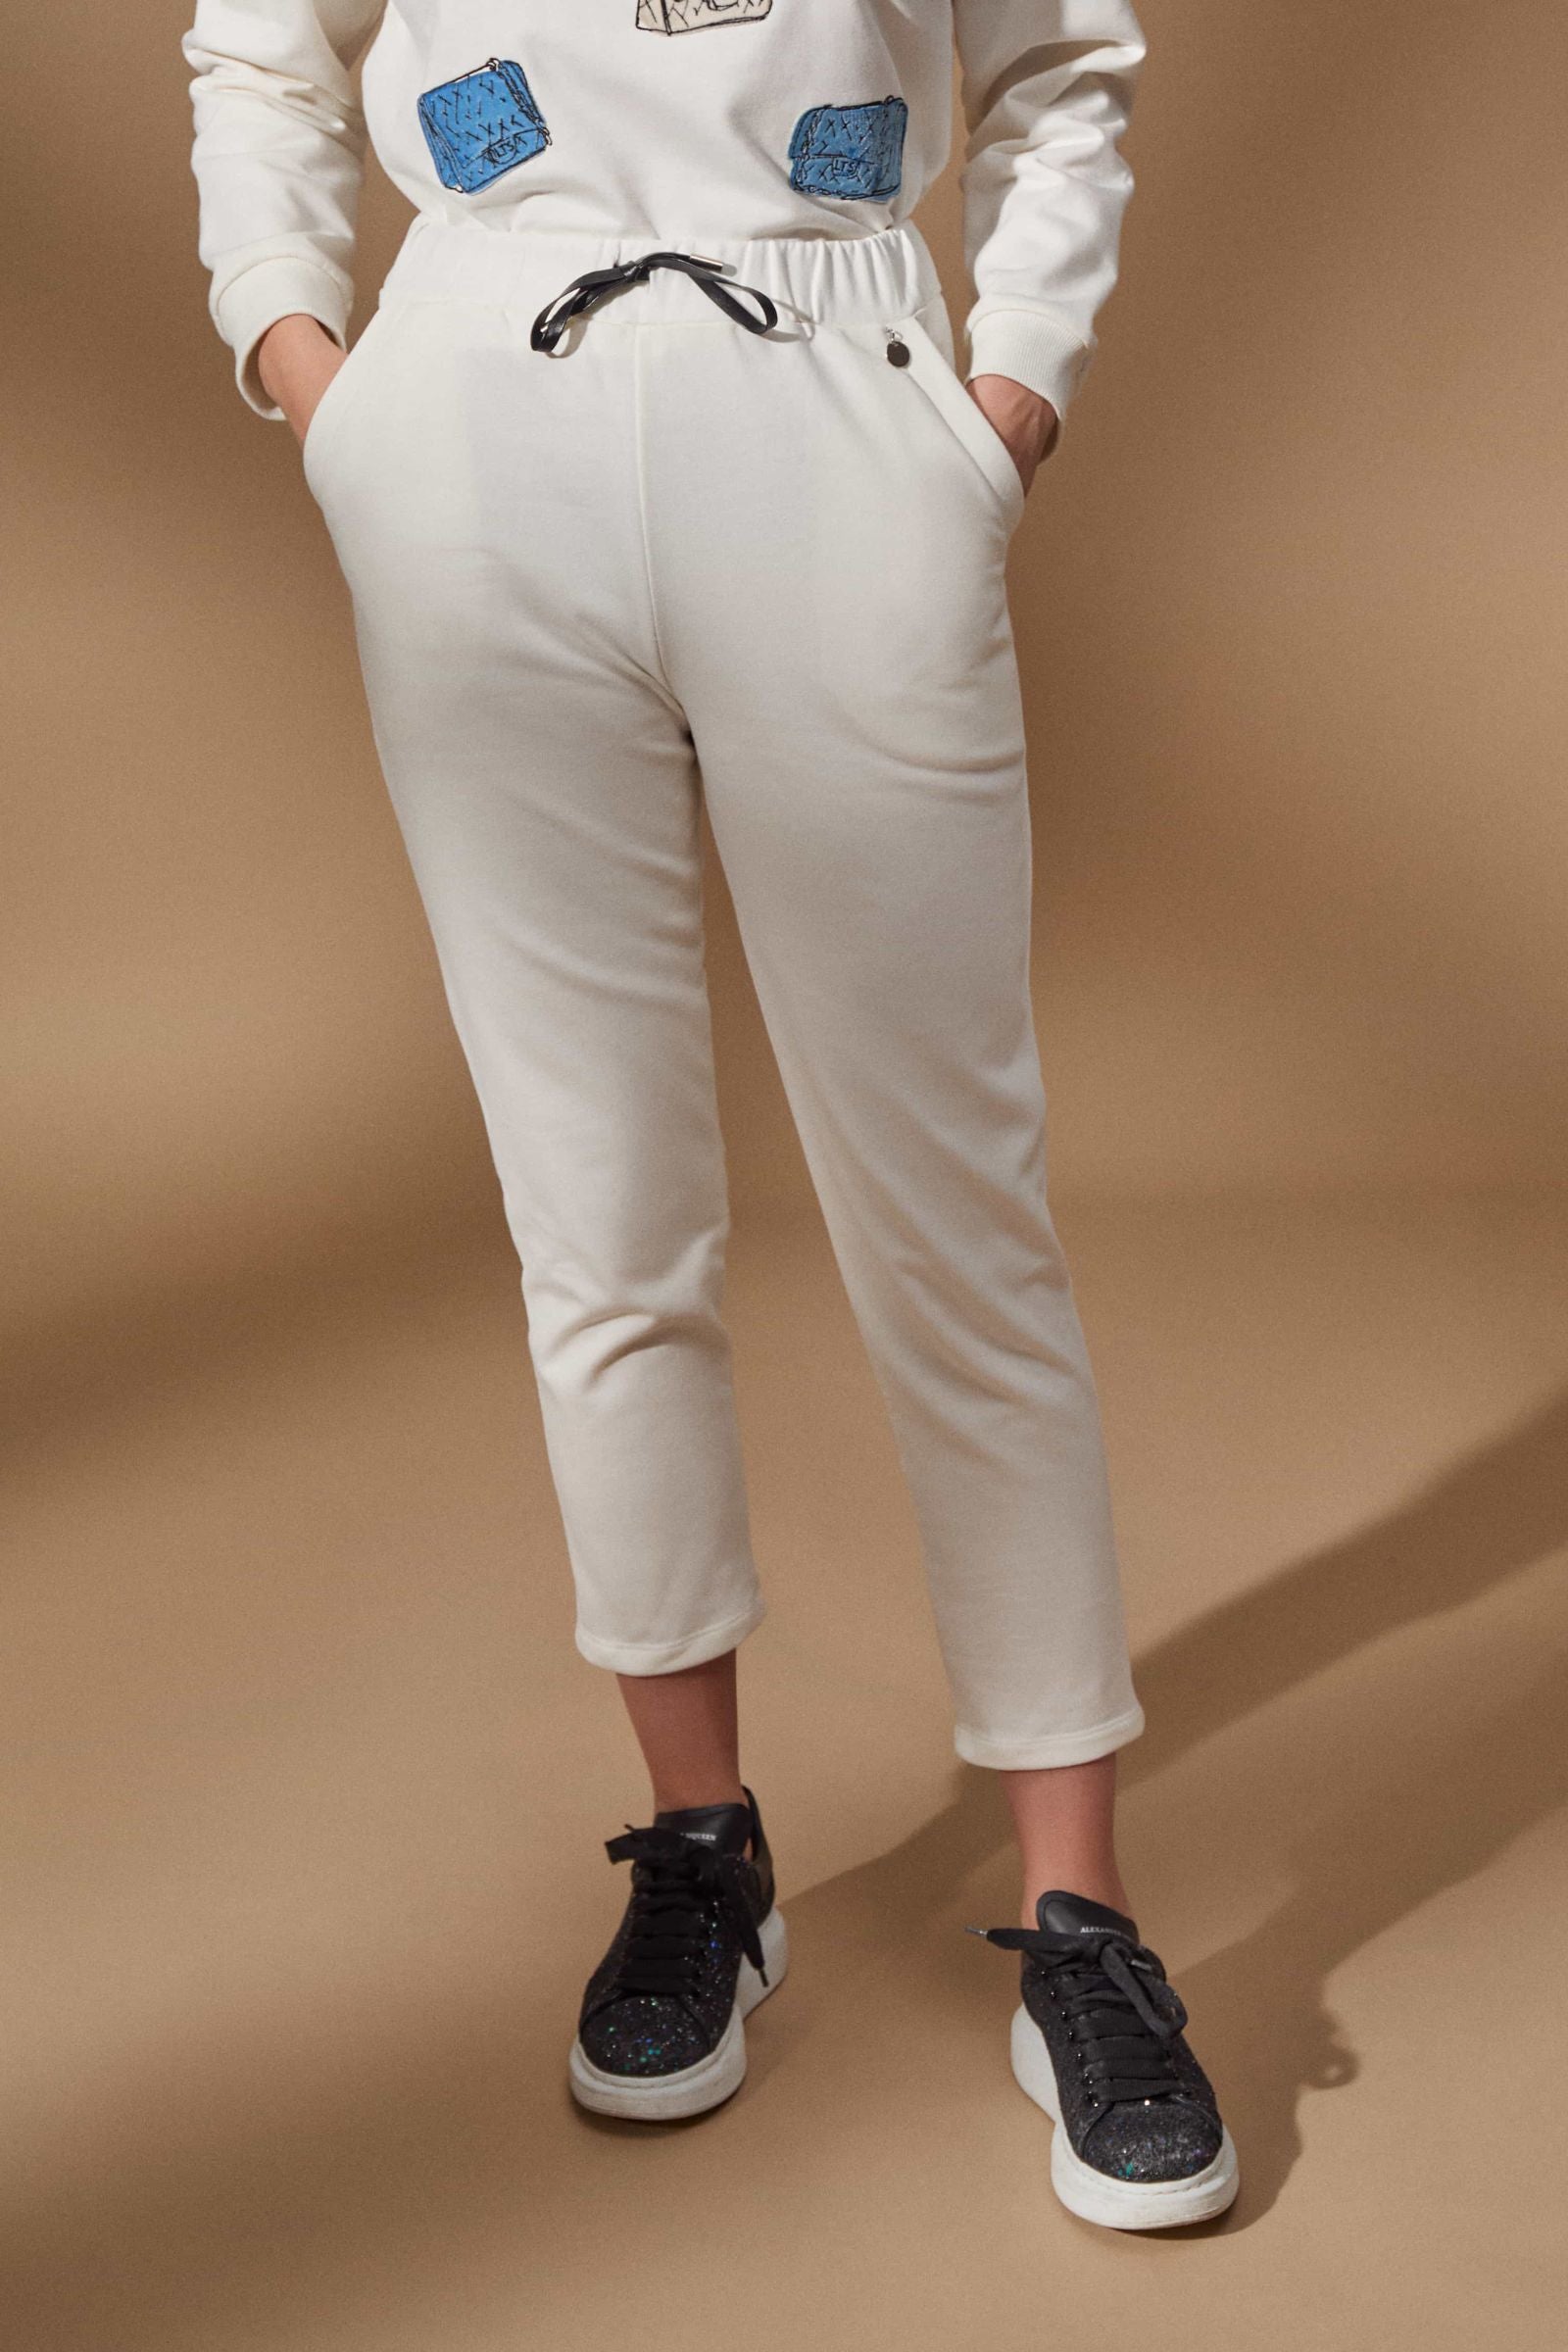 Pantalon blanco algodon con bolsillos y goma Lolitas - lolitasyl.com